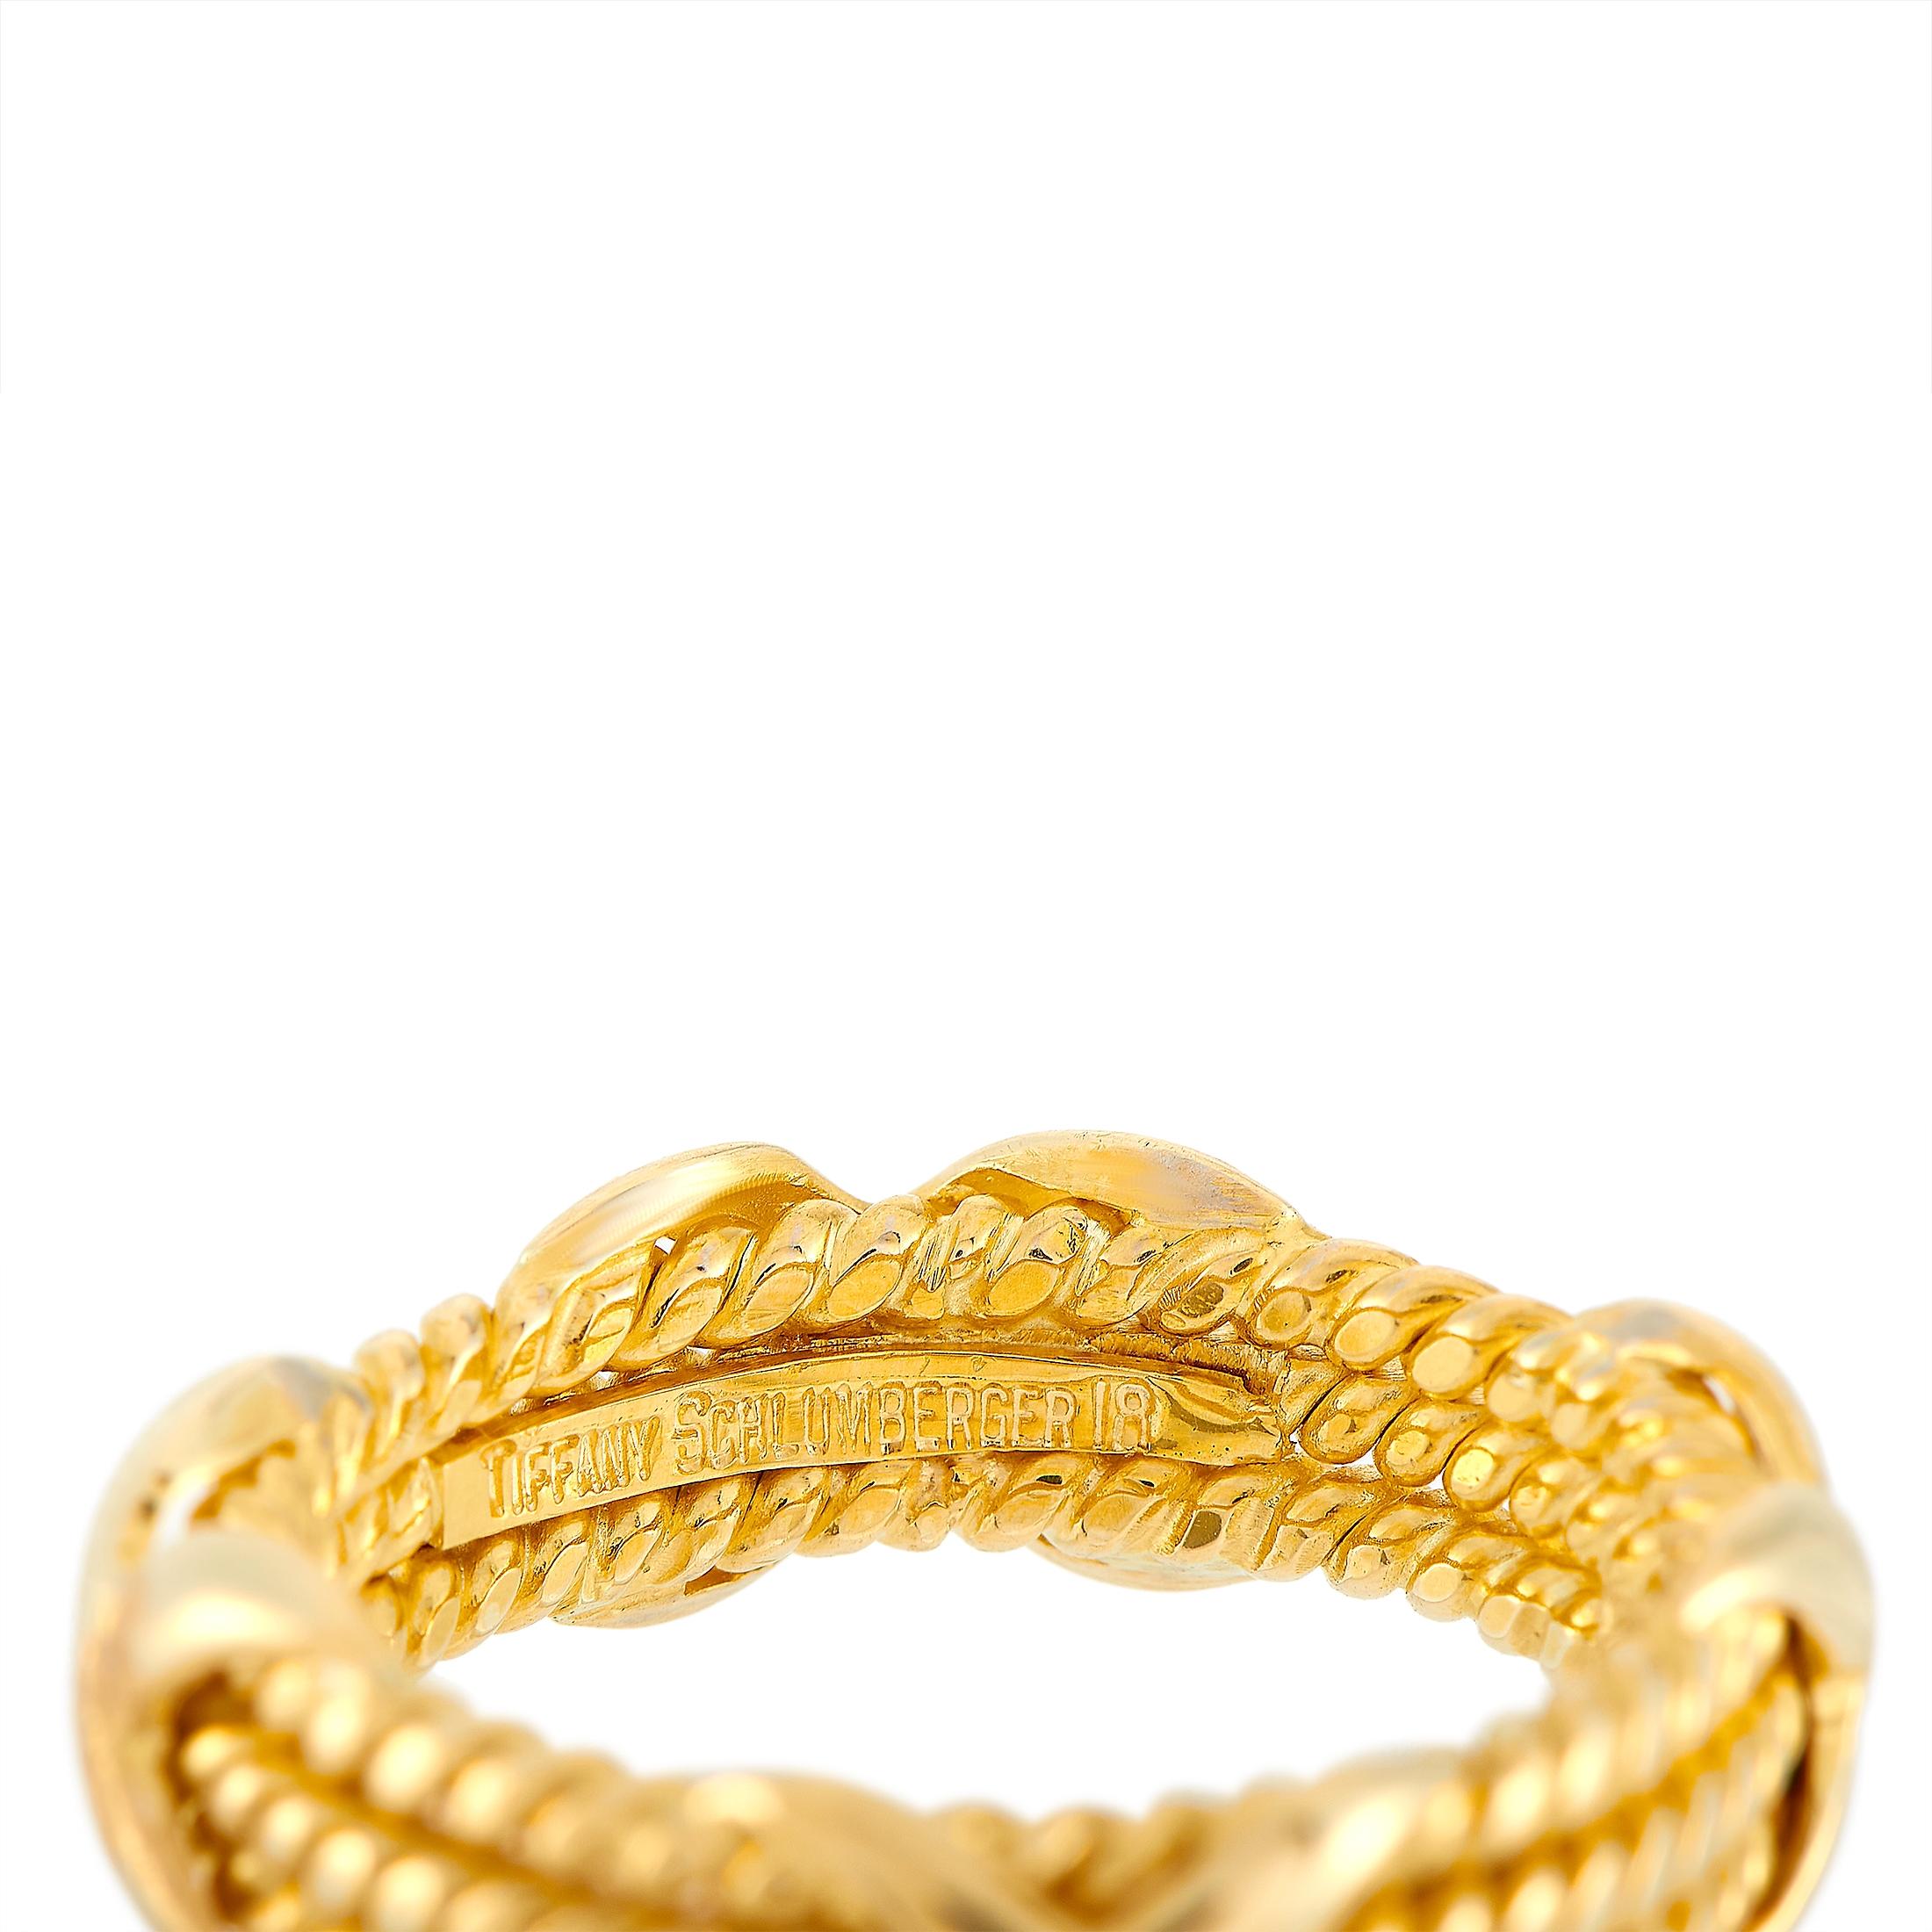 Tiffany & Co. Schlumberger 18 Karat Yellow Gold Ring 1